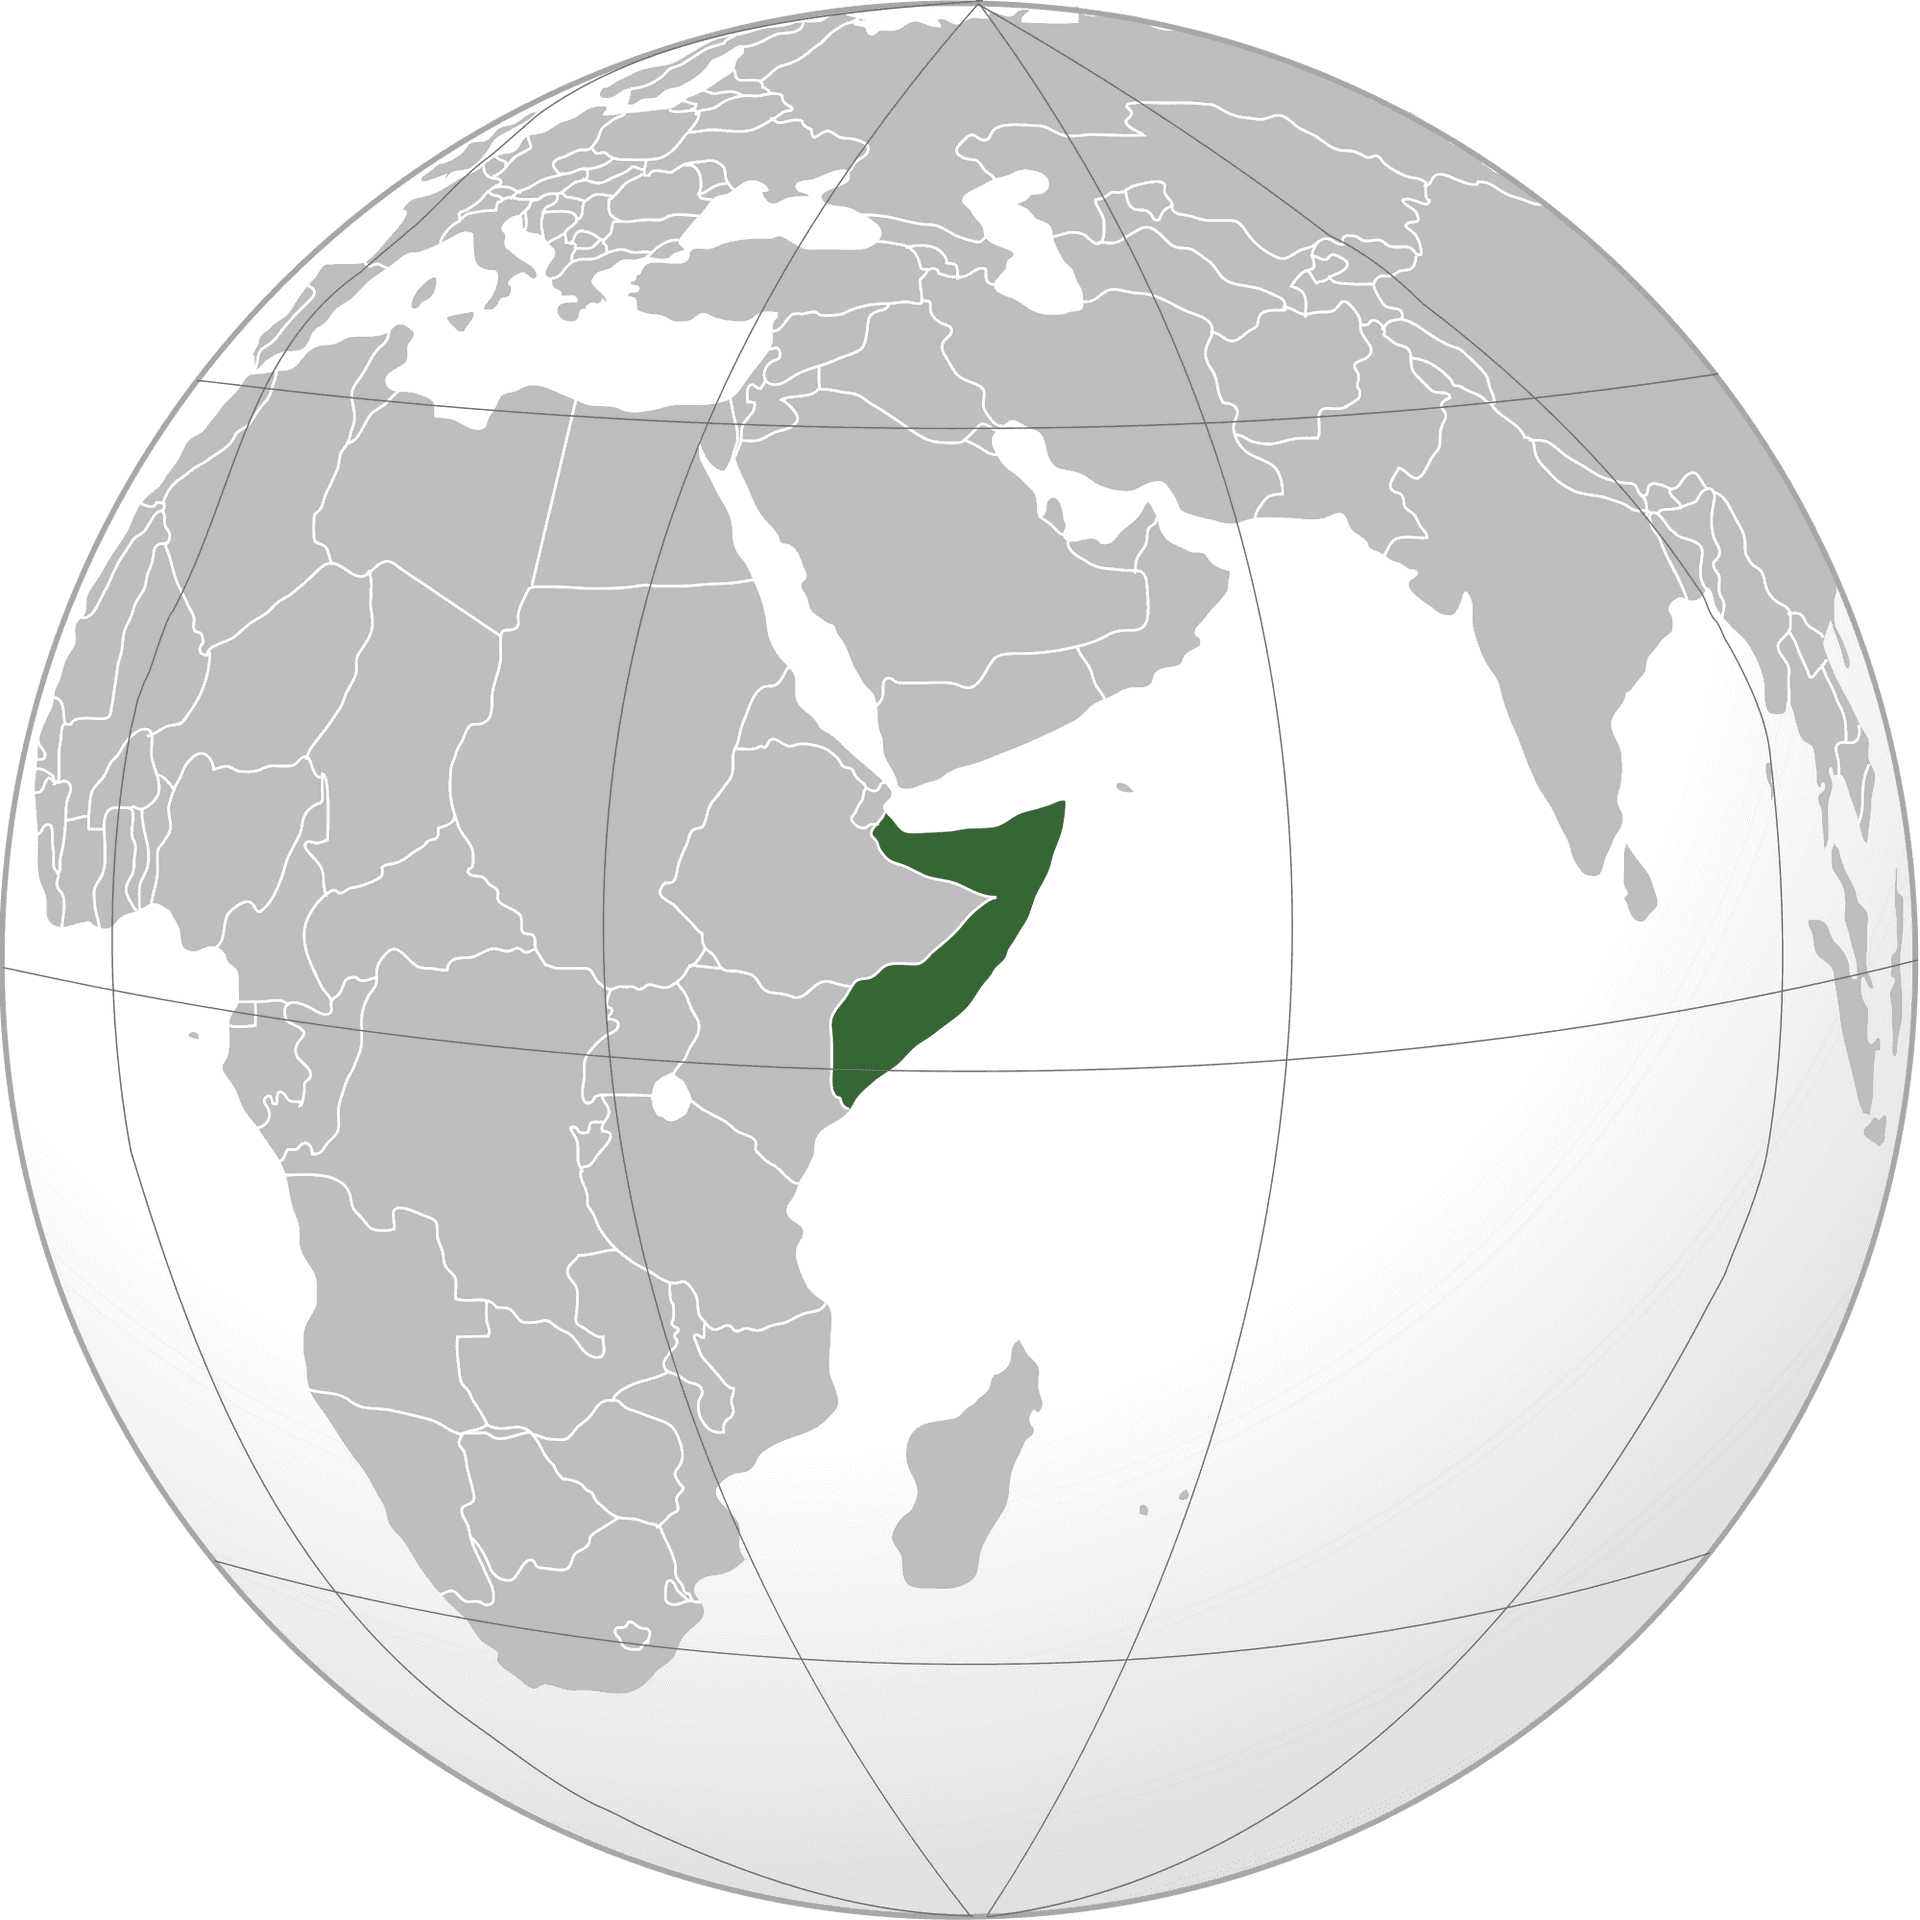 Somaliaon Globe PNG image